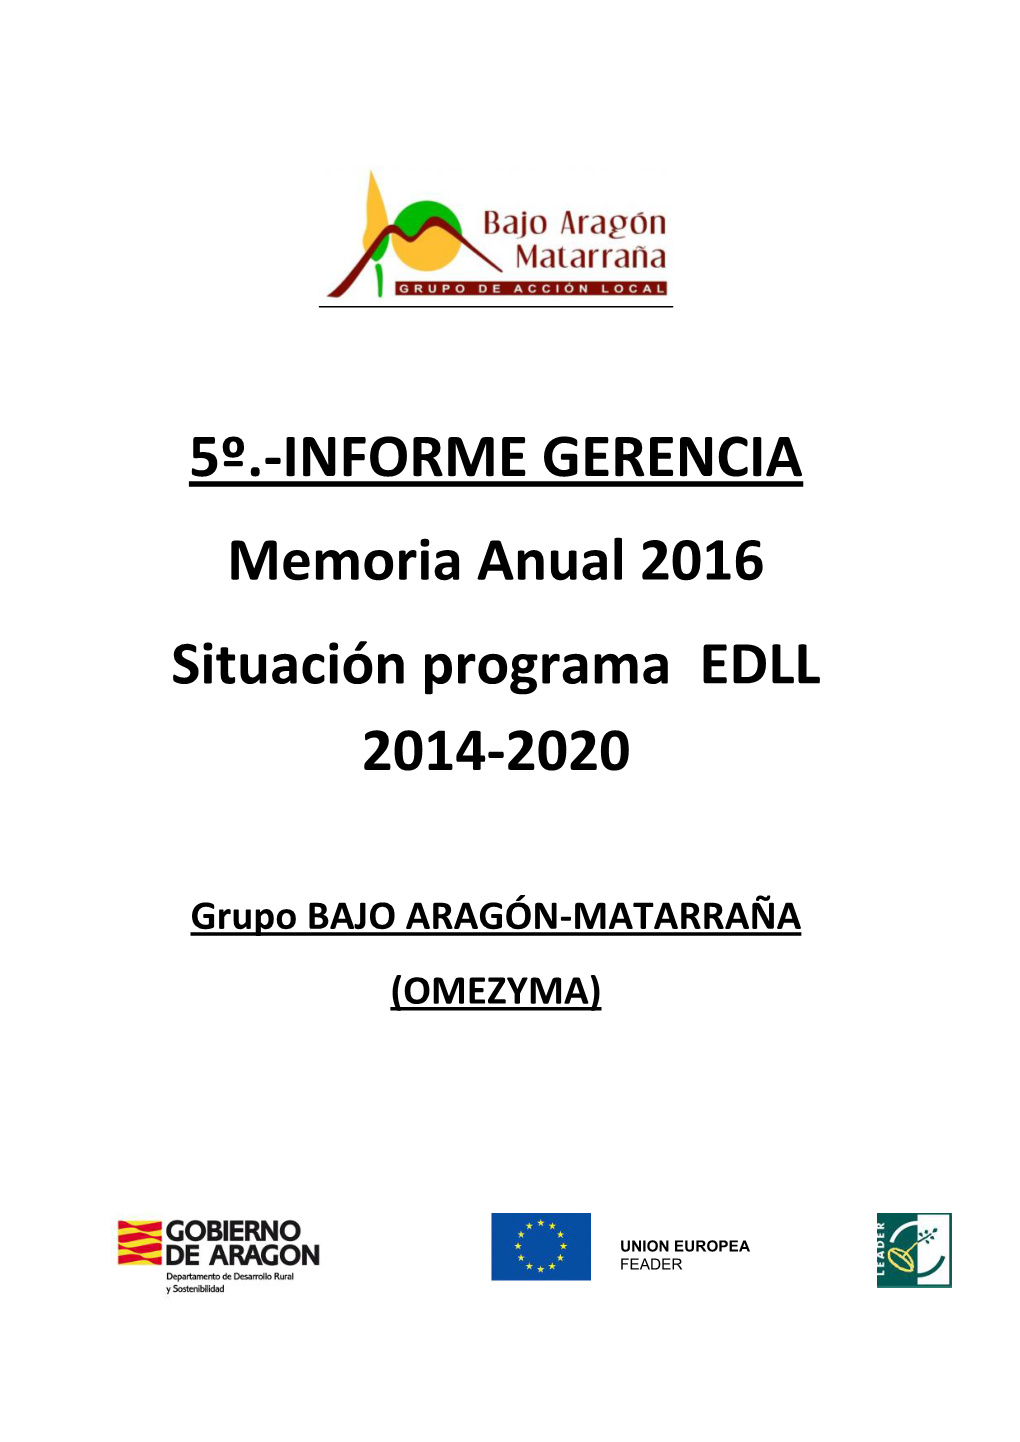 INFORME GERENCIA Memoria Anual 2016 Situación Programa EDLL 2014-2020